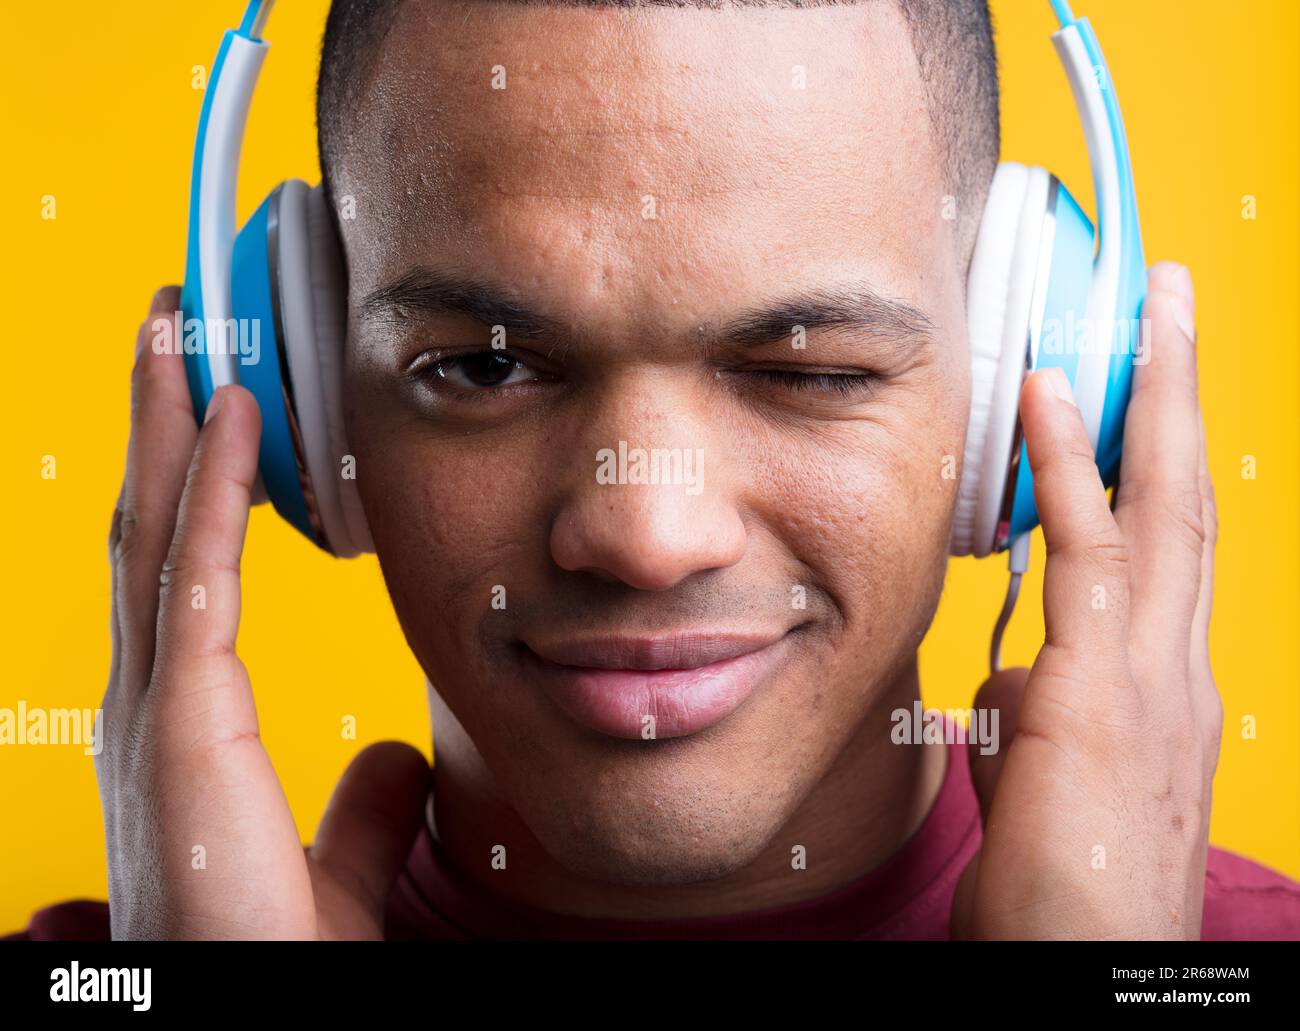 Der junge Mann zwinkert, während er leidenschaftlich Musik oder Podcasts hört. Er hält blaue Kopfhörer auf gelbem Hintergrund in der Hand. Kurze rasierte Haare, dunkelbraune Haut, b Stockfoto